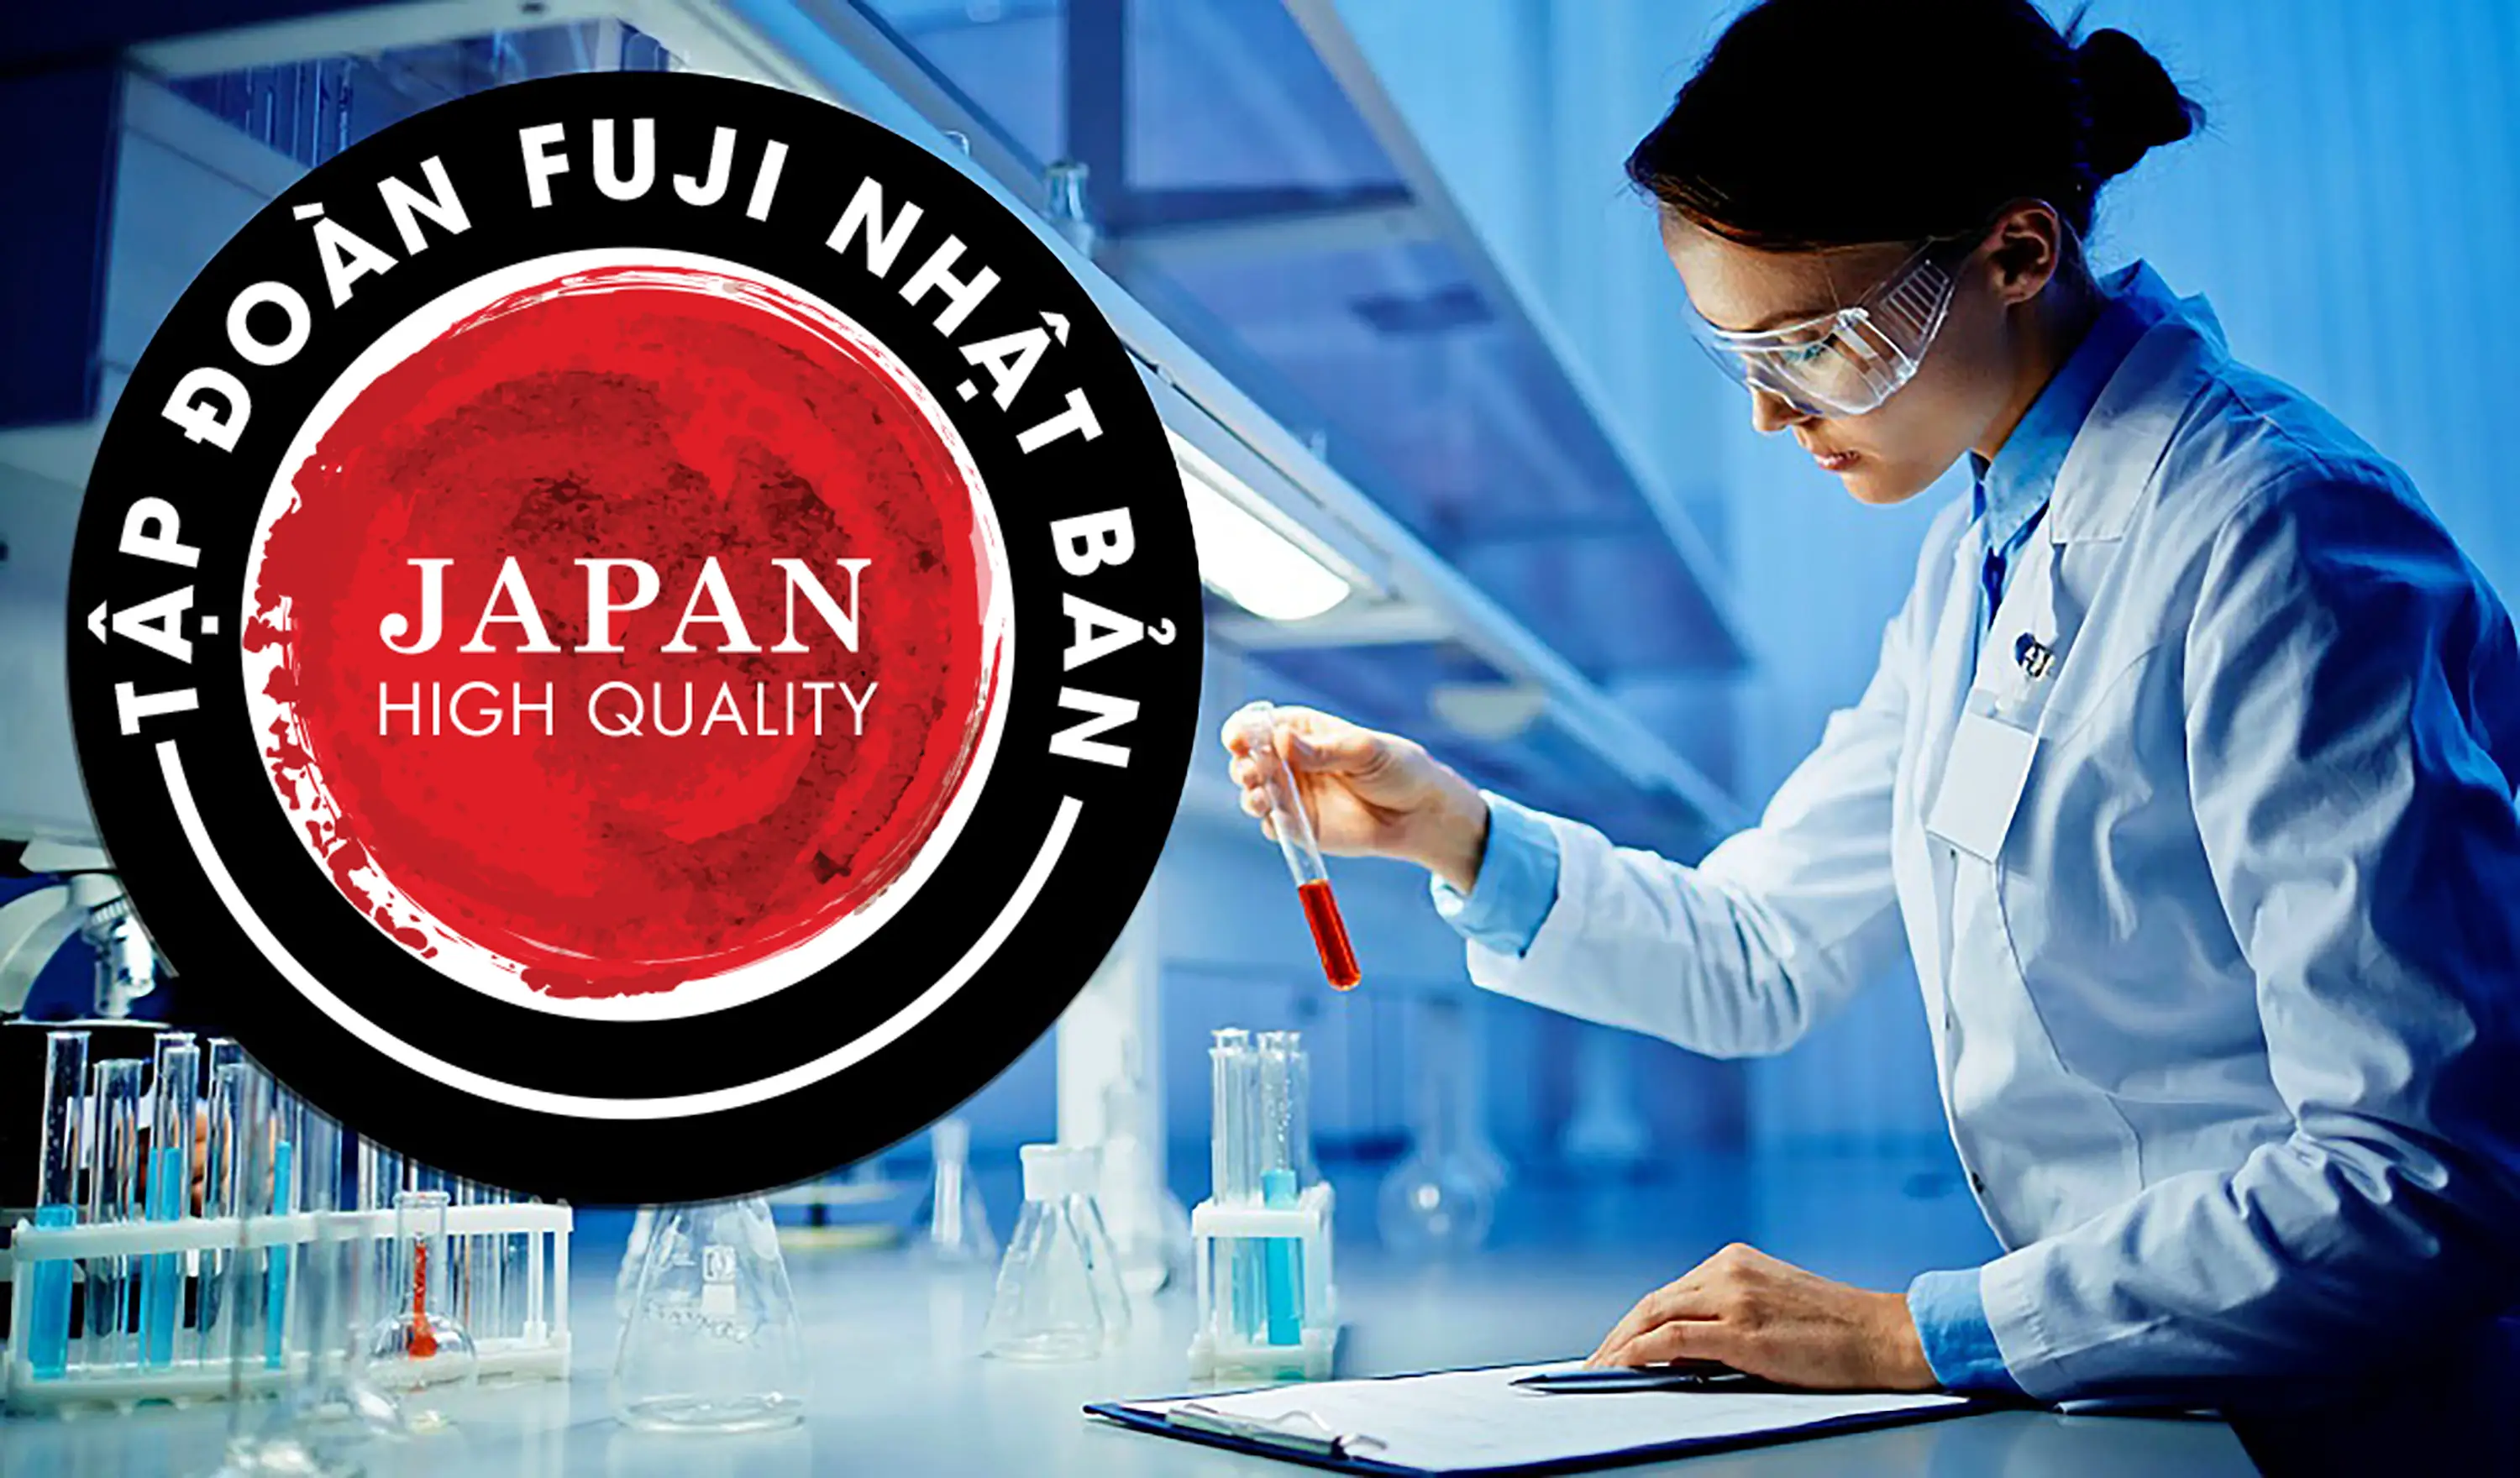 Fuji Nhật Bản – Tập đoàn sản xuất thiết bị Y tế với gần 70 năm kinh nghiệm